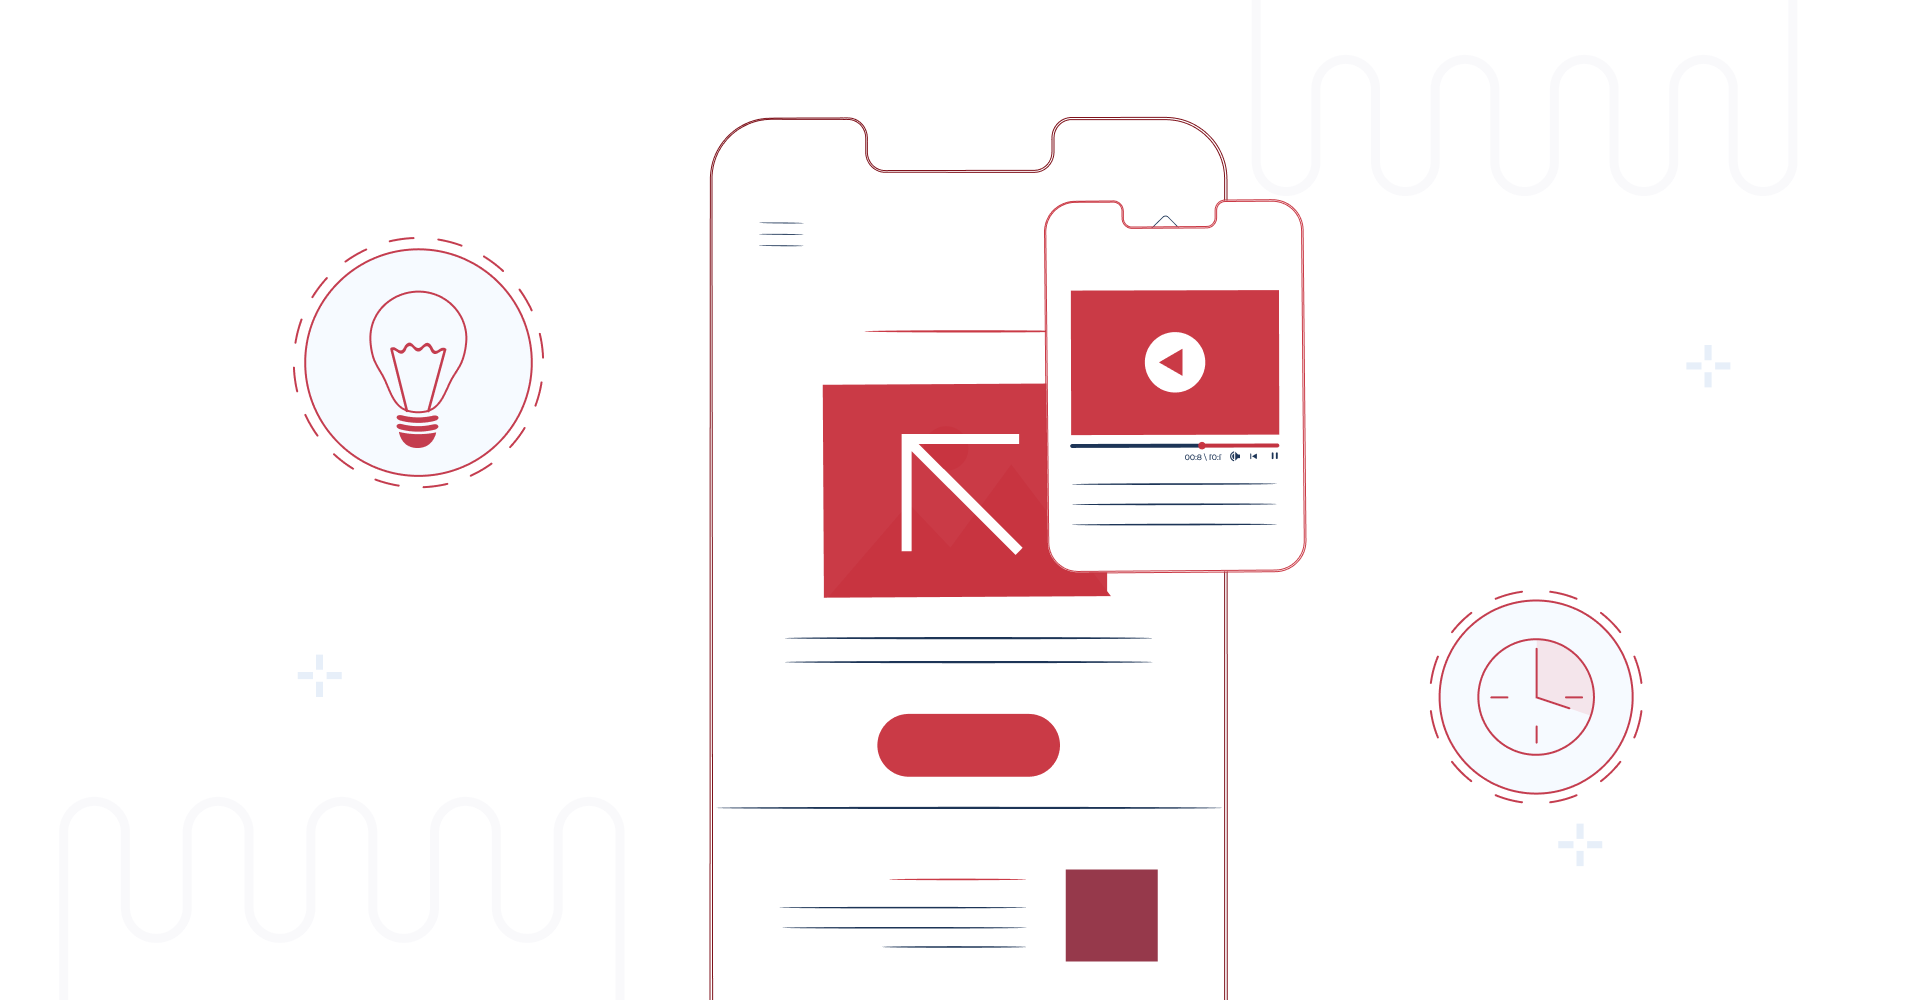 Obraz przedstawiający interfejs aplikacji mobilnej z czerwonymi ikonami i przyciskami, reprezentujący koncepcję mikrofrontendów w artykule "Microfrontend: innowacyjne podejście do architektury frontendu"